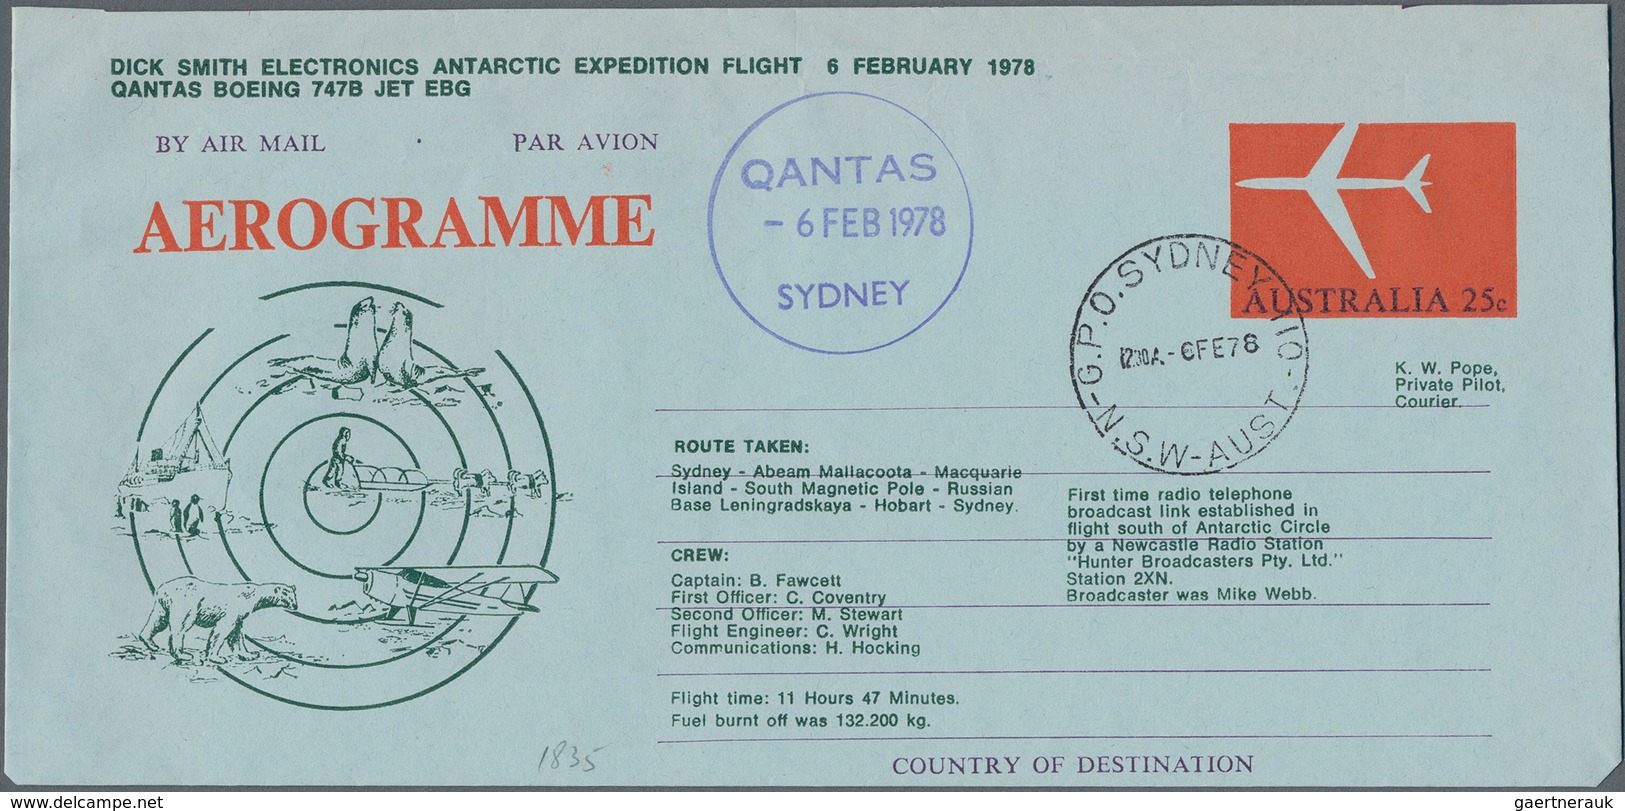 Australien - Ganzsachen: 1965/2010 (ca.) Accumulation Of 1.840 Unused/CTO/used Aerogrammes And Airle - Postwaardestukken